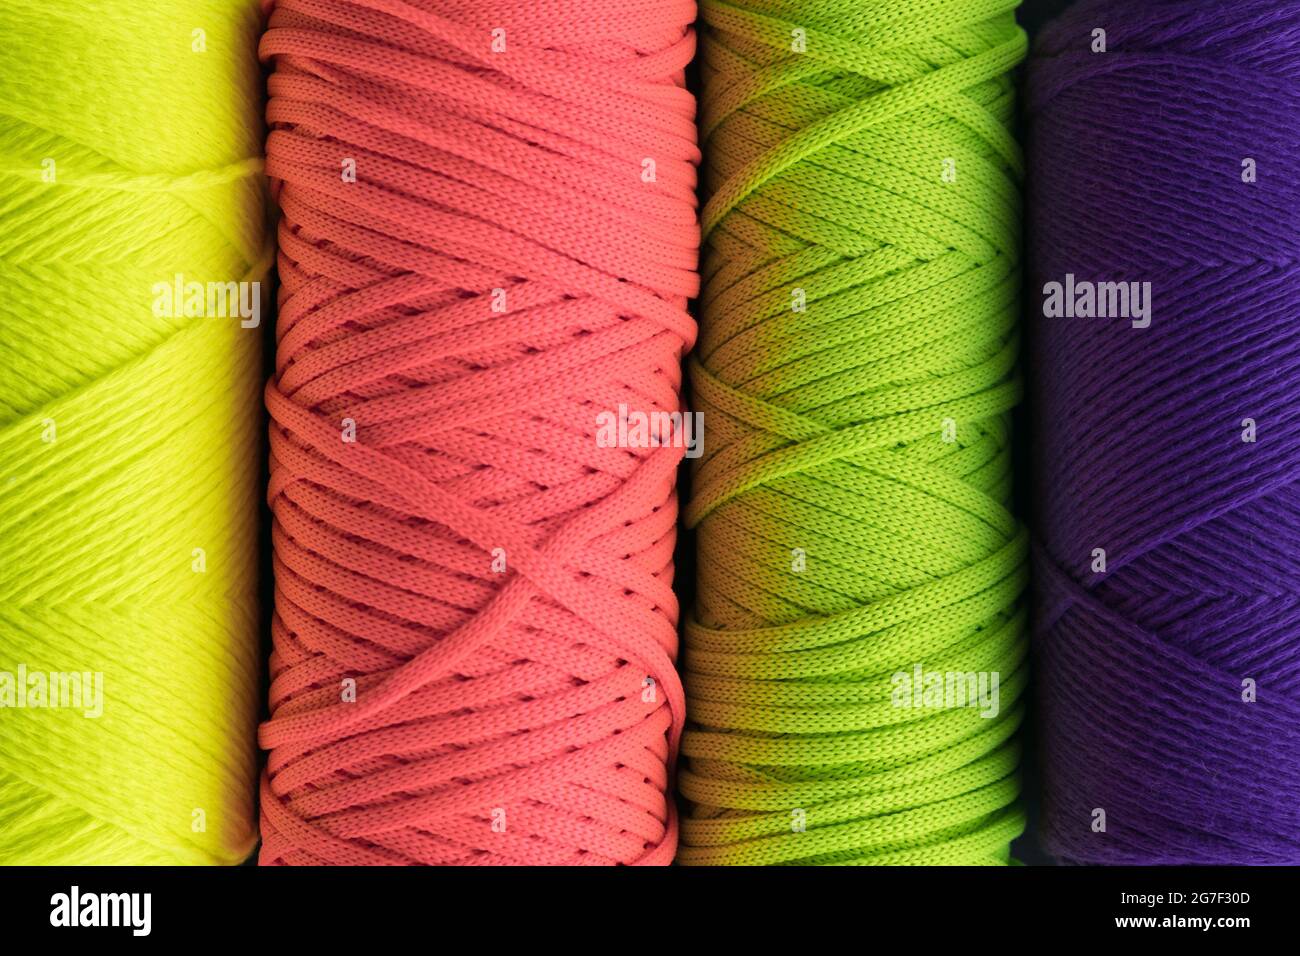 Farbiger Hintergrund aus Macrame-Garn. Knäuel aus Baumwollgarn zum Makramstricken Stockfoto